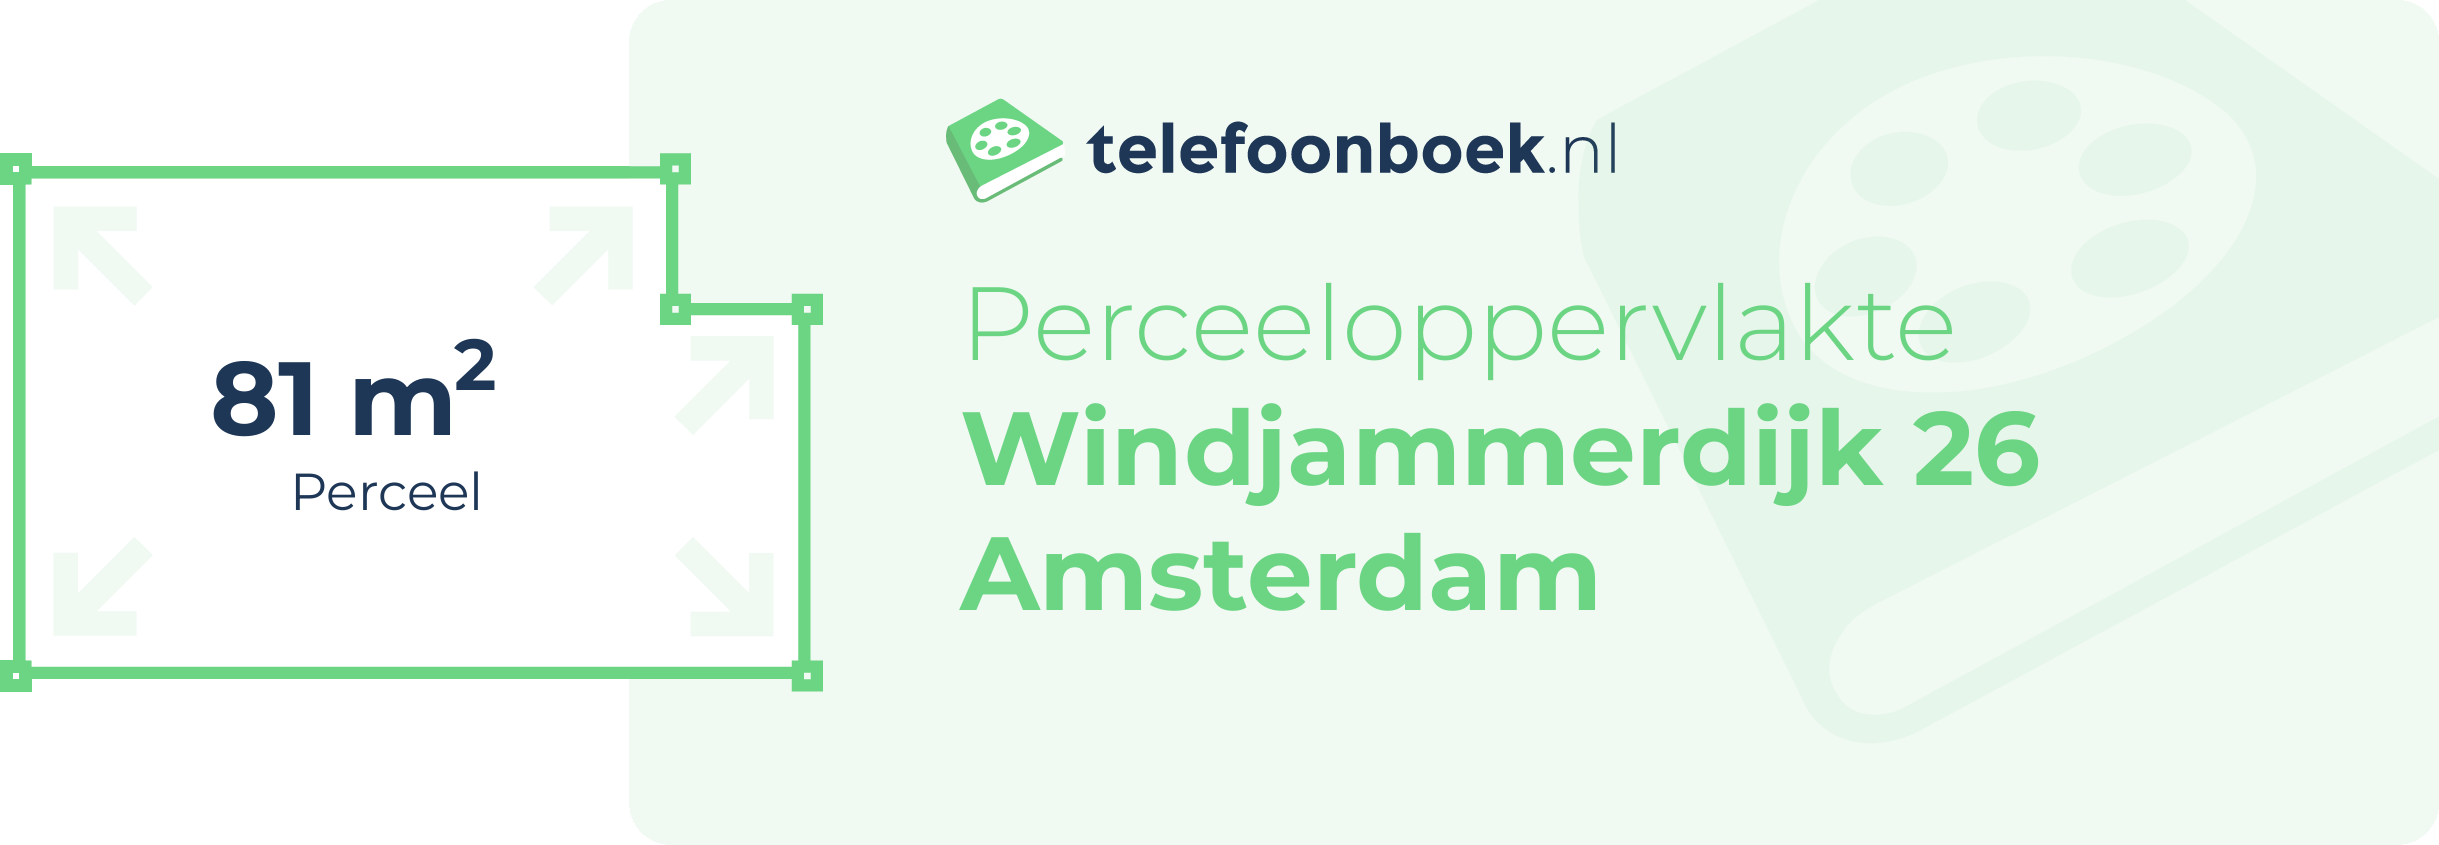 Perceeloppervlakte Windjammerdijk 26 Amsterdam